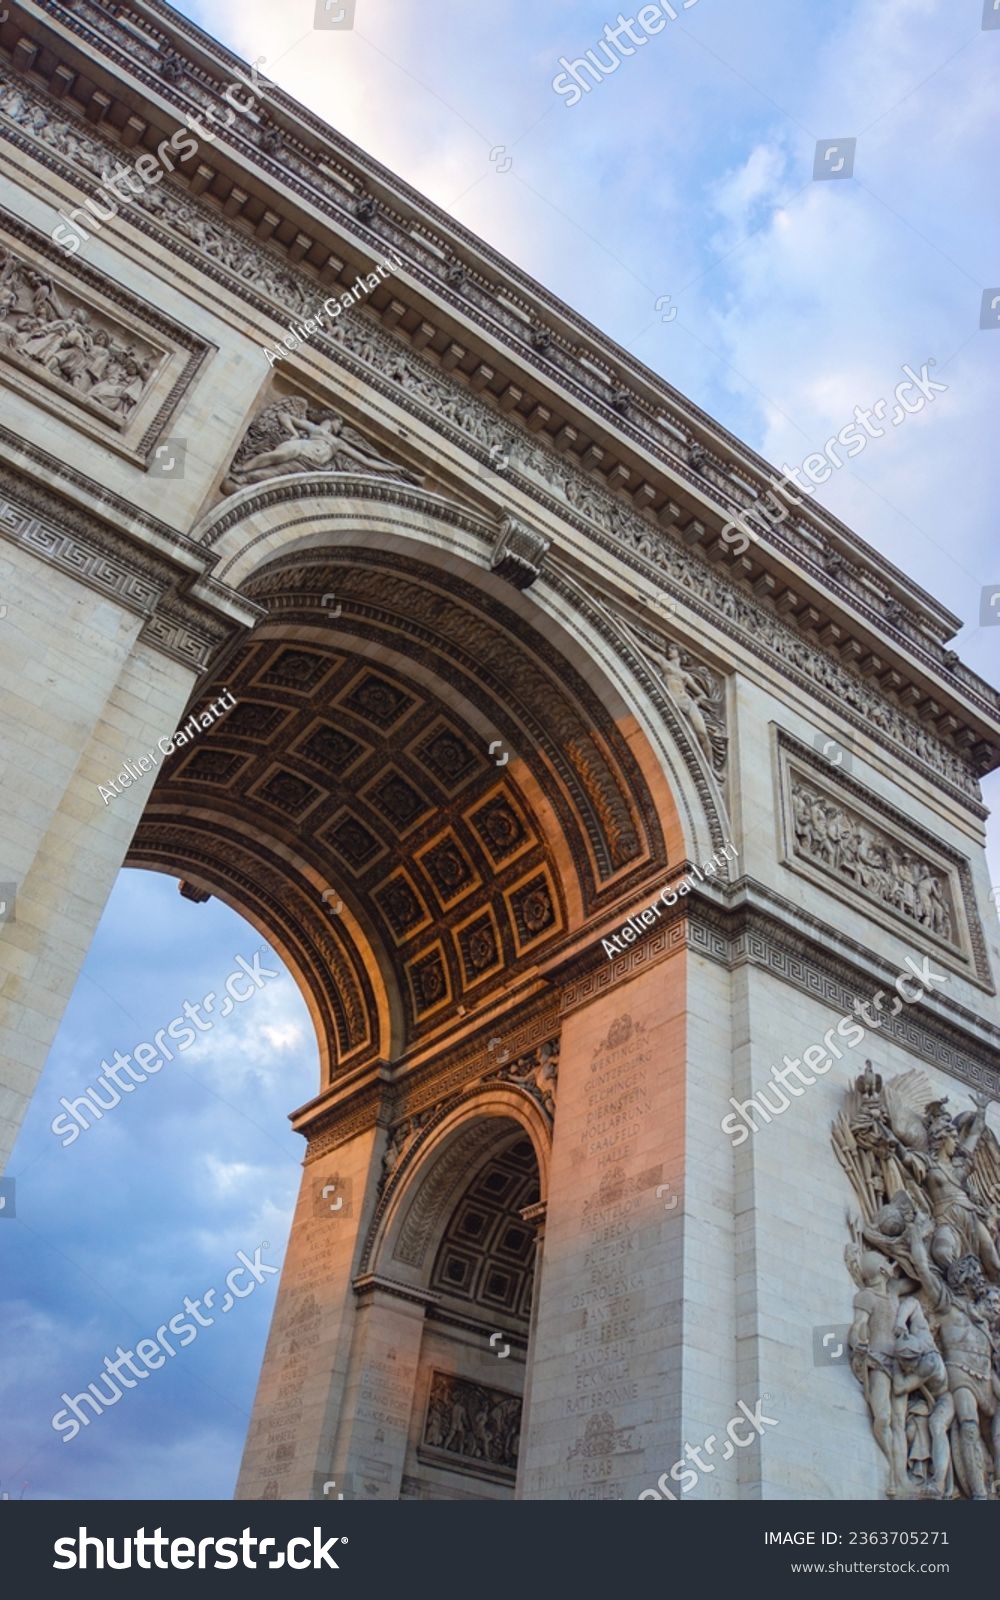 Sunset in the Arc de Triomphe in Paris #2363705271